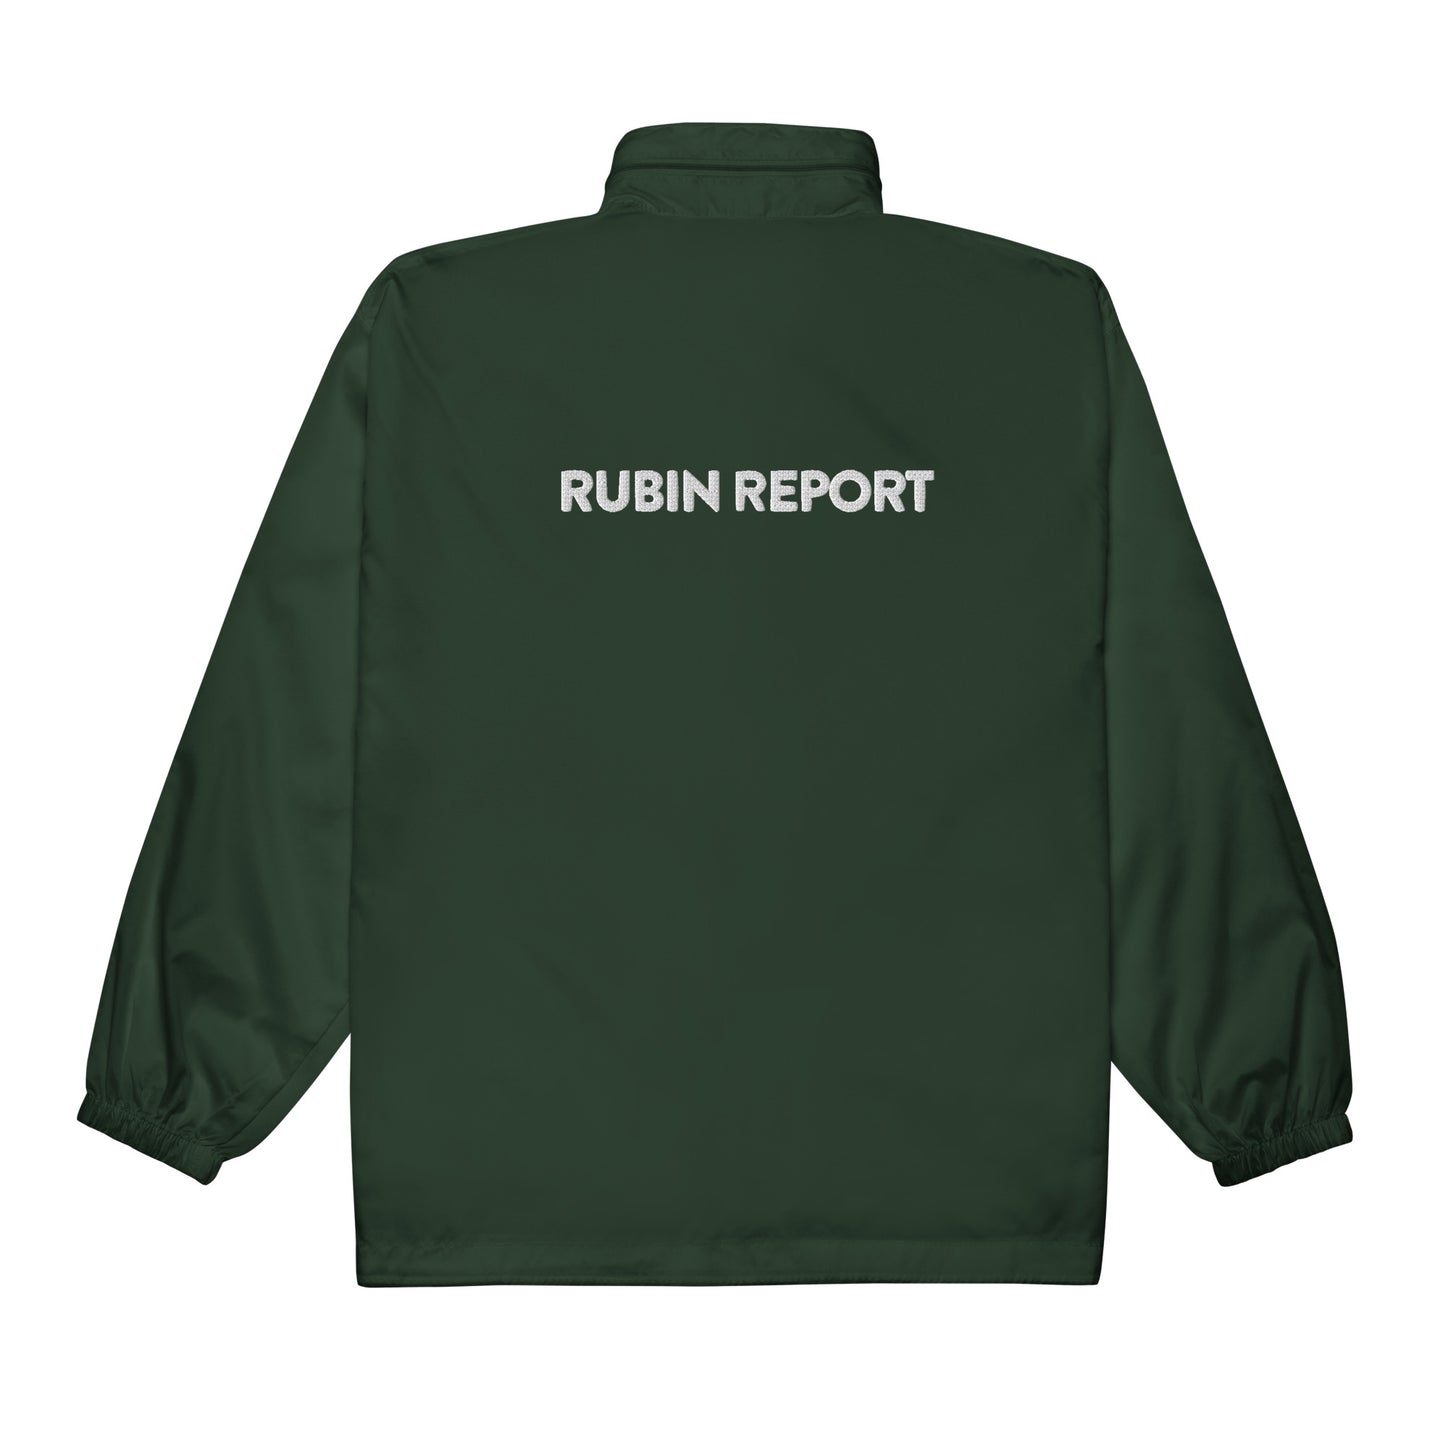 Rubin Report / Miami, Florida Embroidered Windbreaker